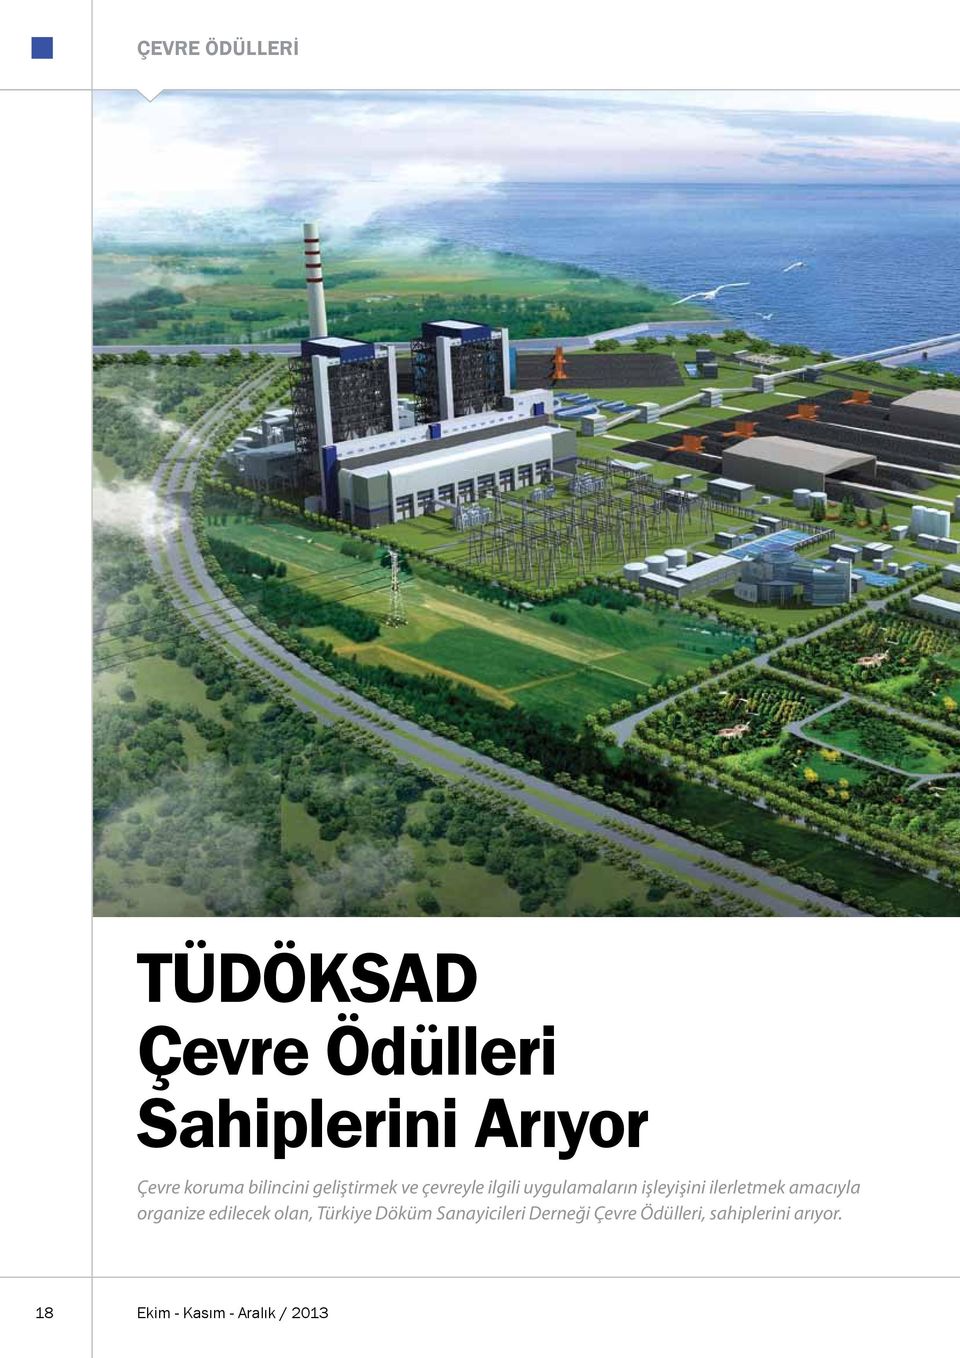 ilerletmek amacıyla organize edilecek olan, Türkiye Döküm Sanayicileri